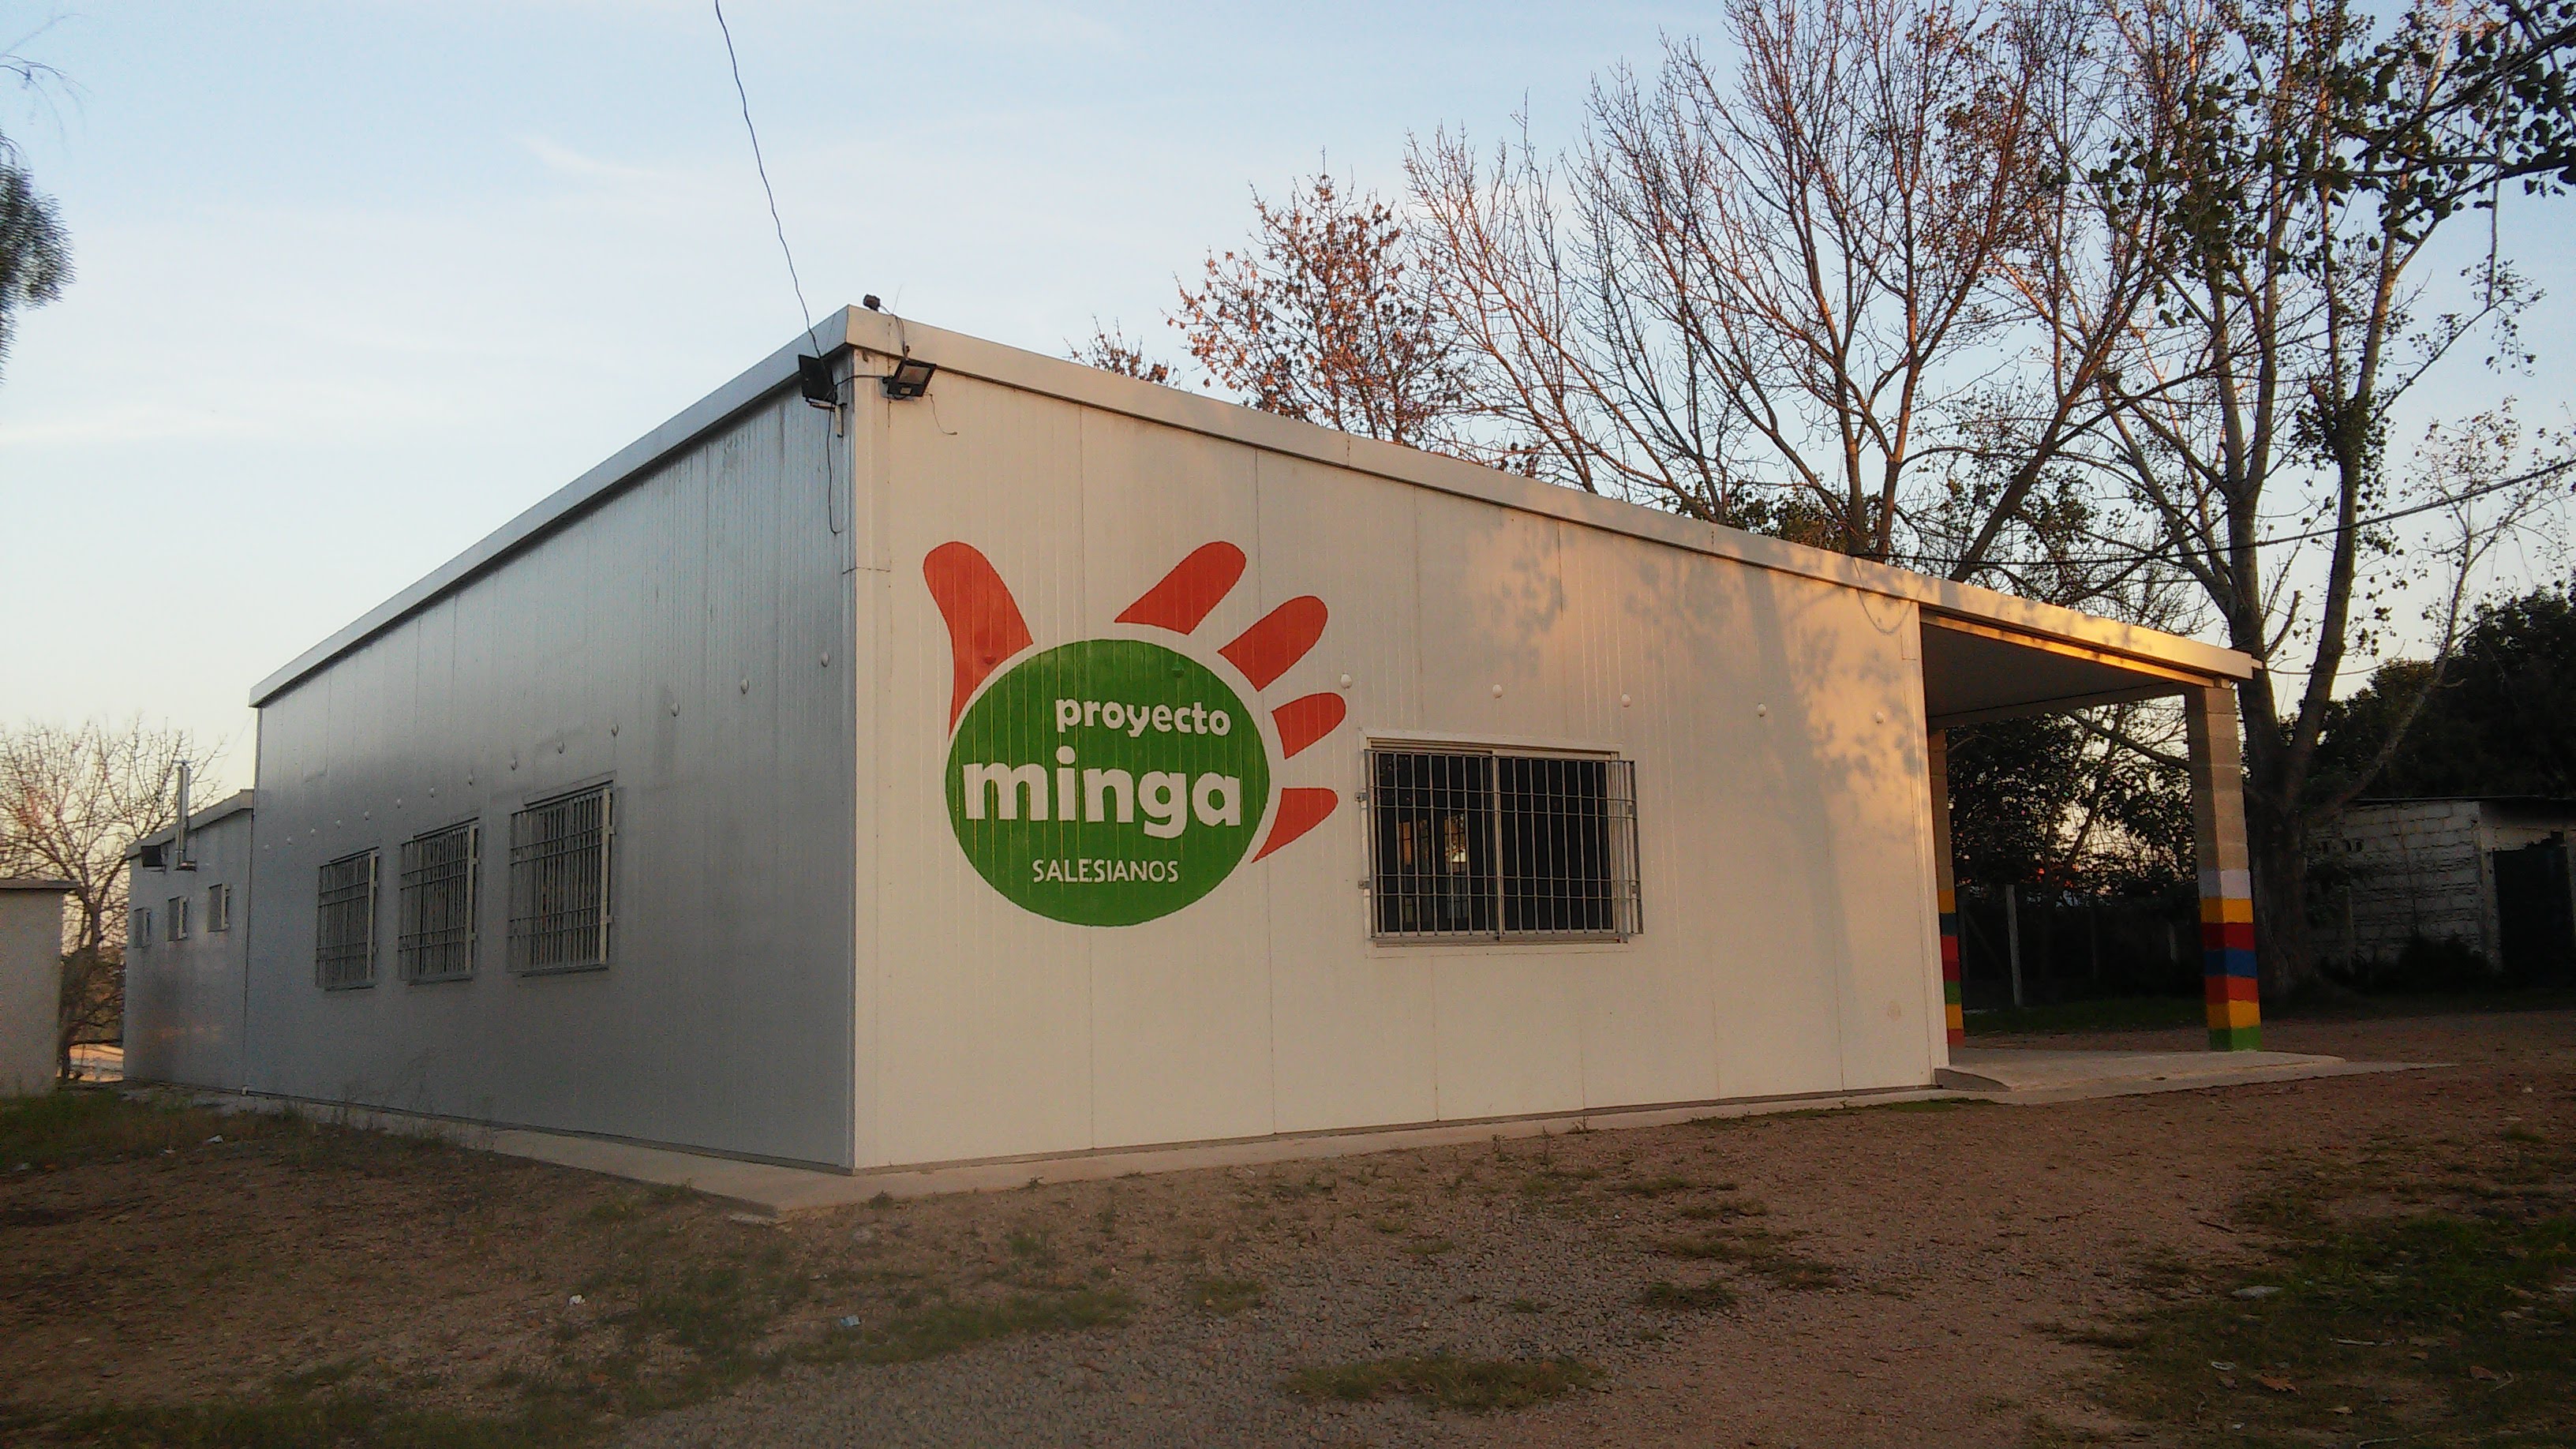 Casa del proyecto Minga.